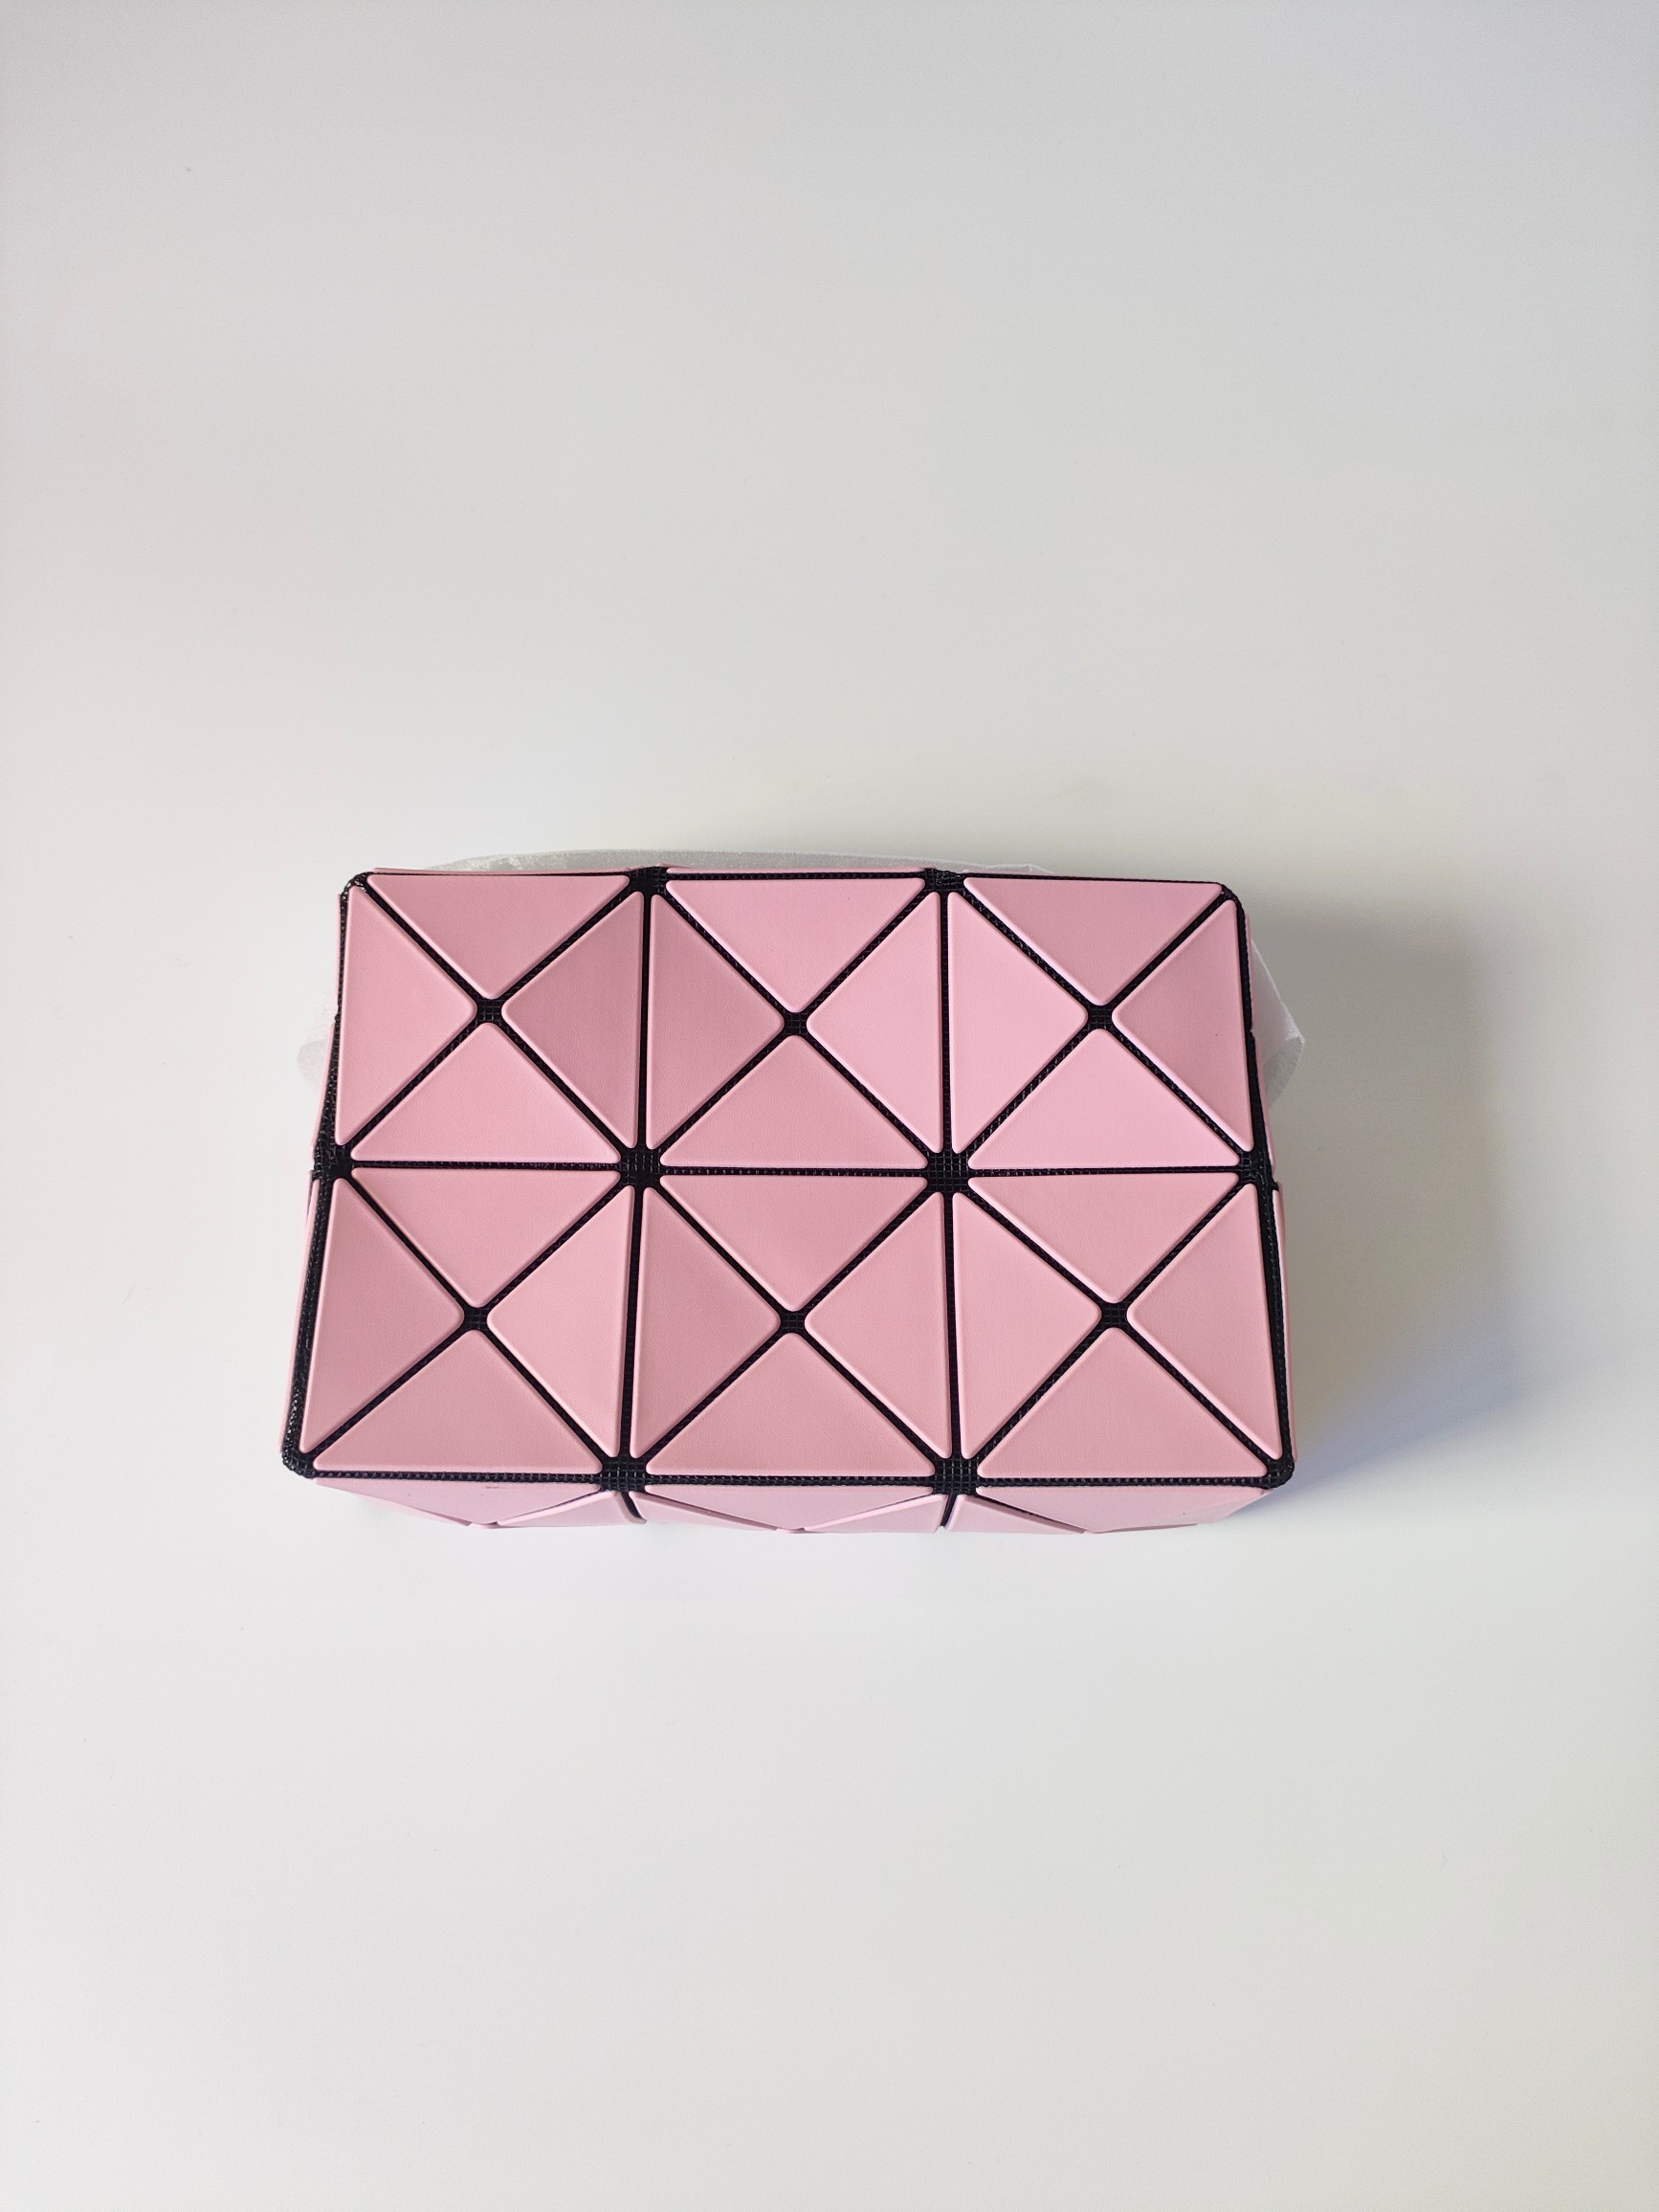 三宅一生 9月新款丘比特小方盒 采用品牌标志性三角片设计的方盒形系列。 口袋和拉链隐藏在三角片的接缝处，设计简洁大方。 斜挎包可通过内部的金属配件调节背带长度。在保持小巧精致外观的同时，可搭配多种风格。尺寸：11.5x17x6cm 颜色：粉色